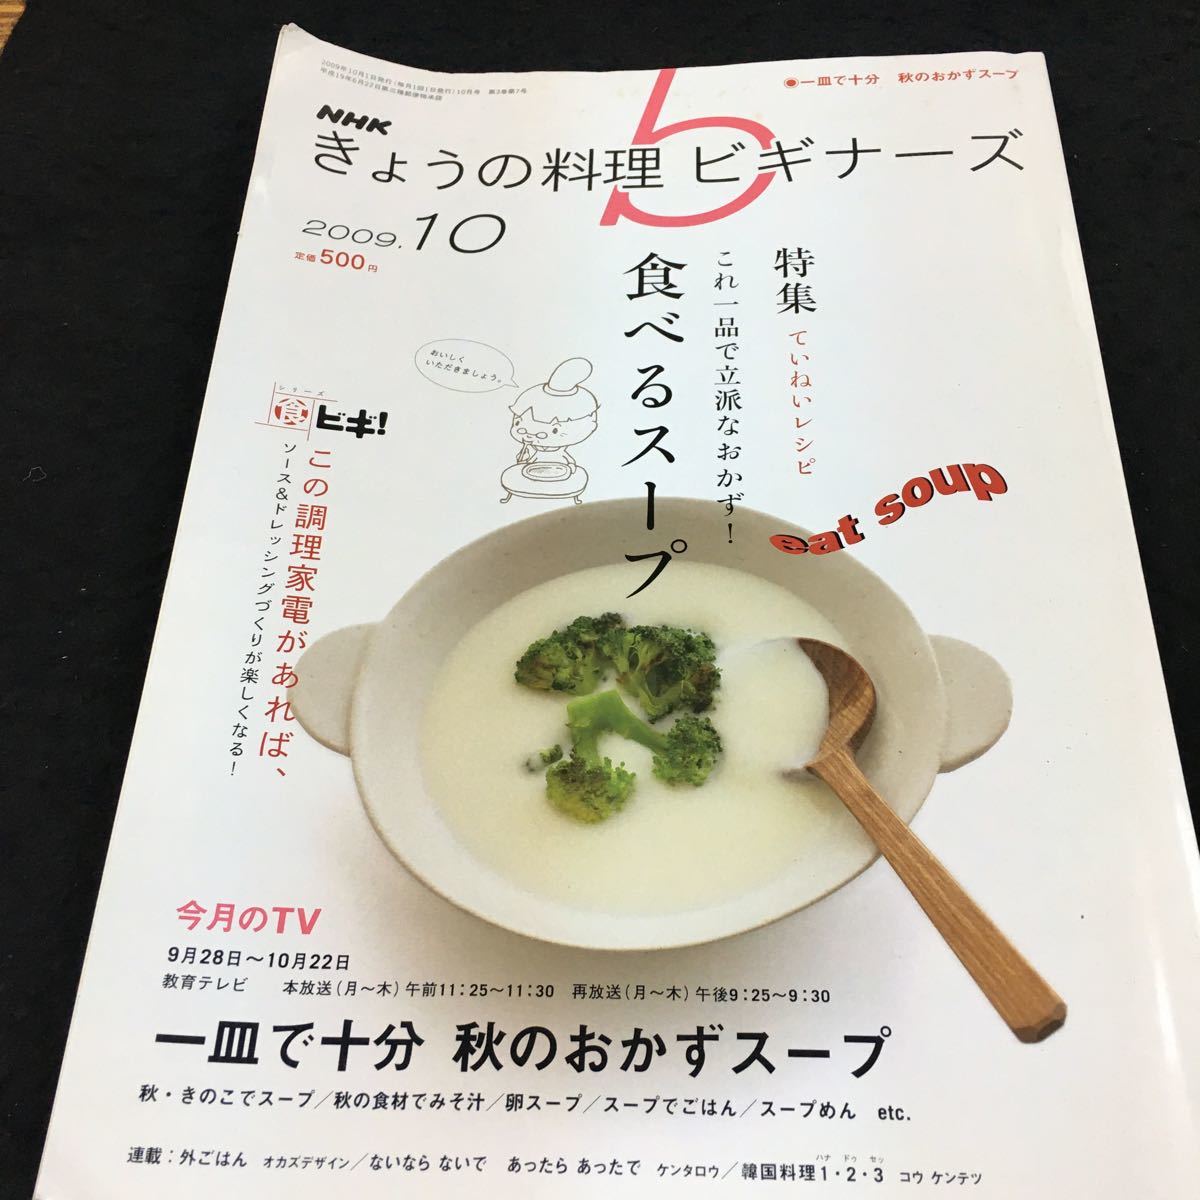 h-500 NHK(b)きょうの料理 ビギナーズ 2009.10 特集 食べるスープ 今月のTV 一皿で十分 秋のおかずスープ 2009年10月1日 発行 ※8_画像1